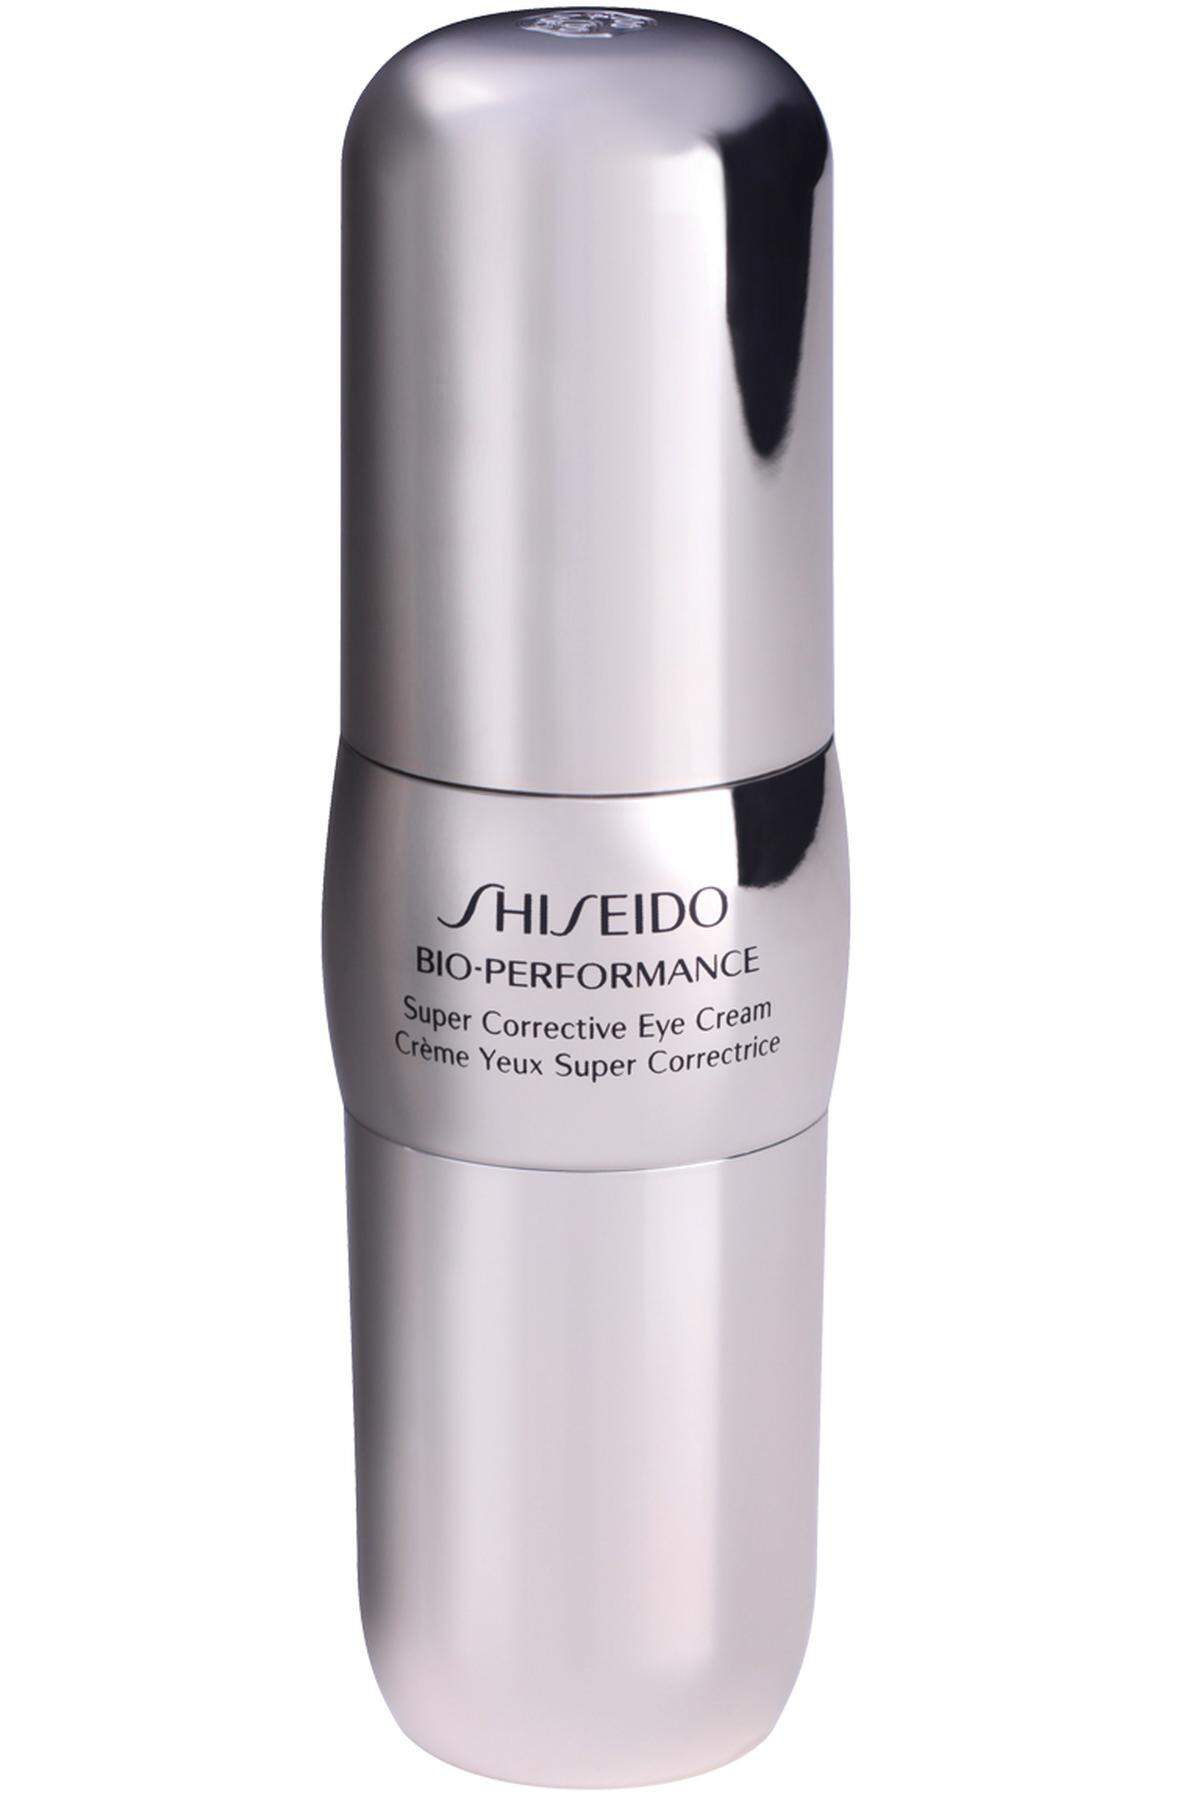 Den Gehalt hauteigener Hyaluronsäure soll „Bio Performance Super Corrective Eye Cream“ von Shiseido steigern, 69 Euro.